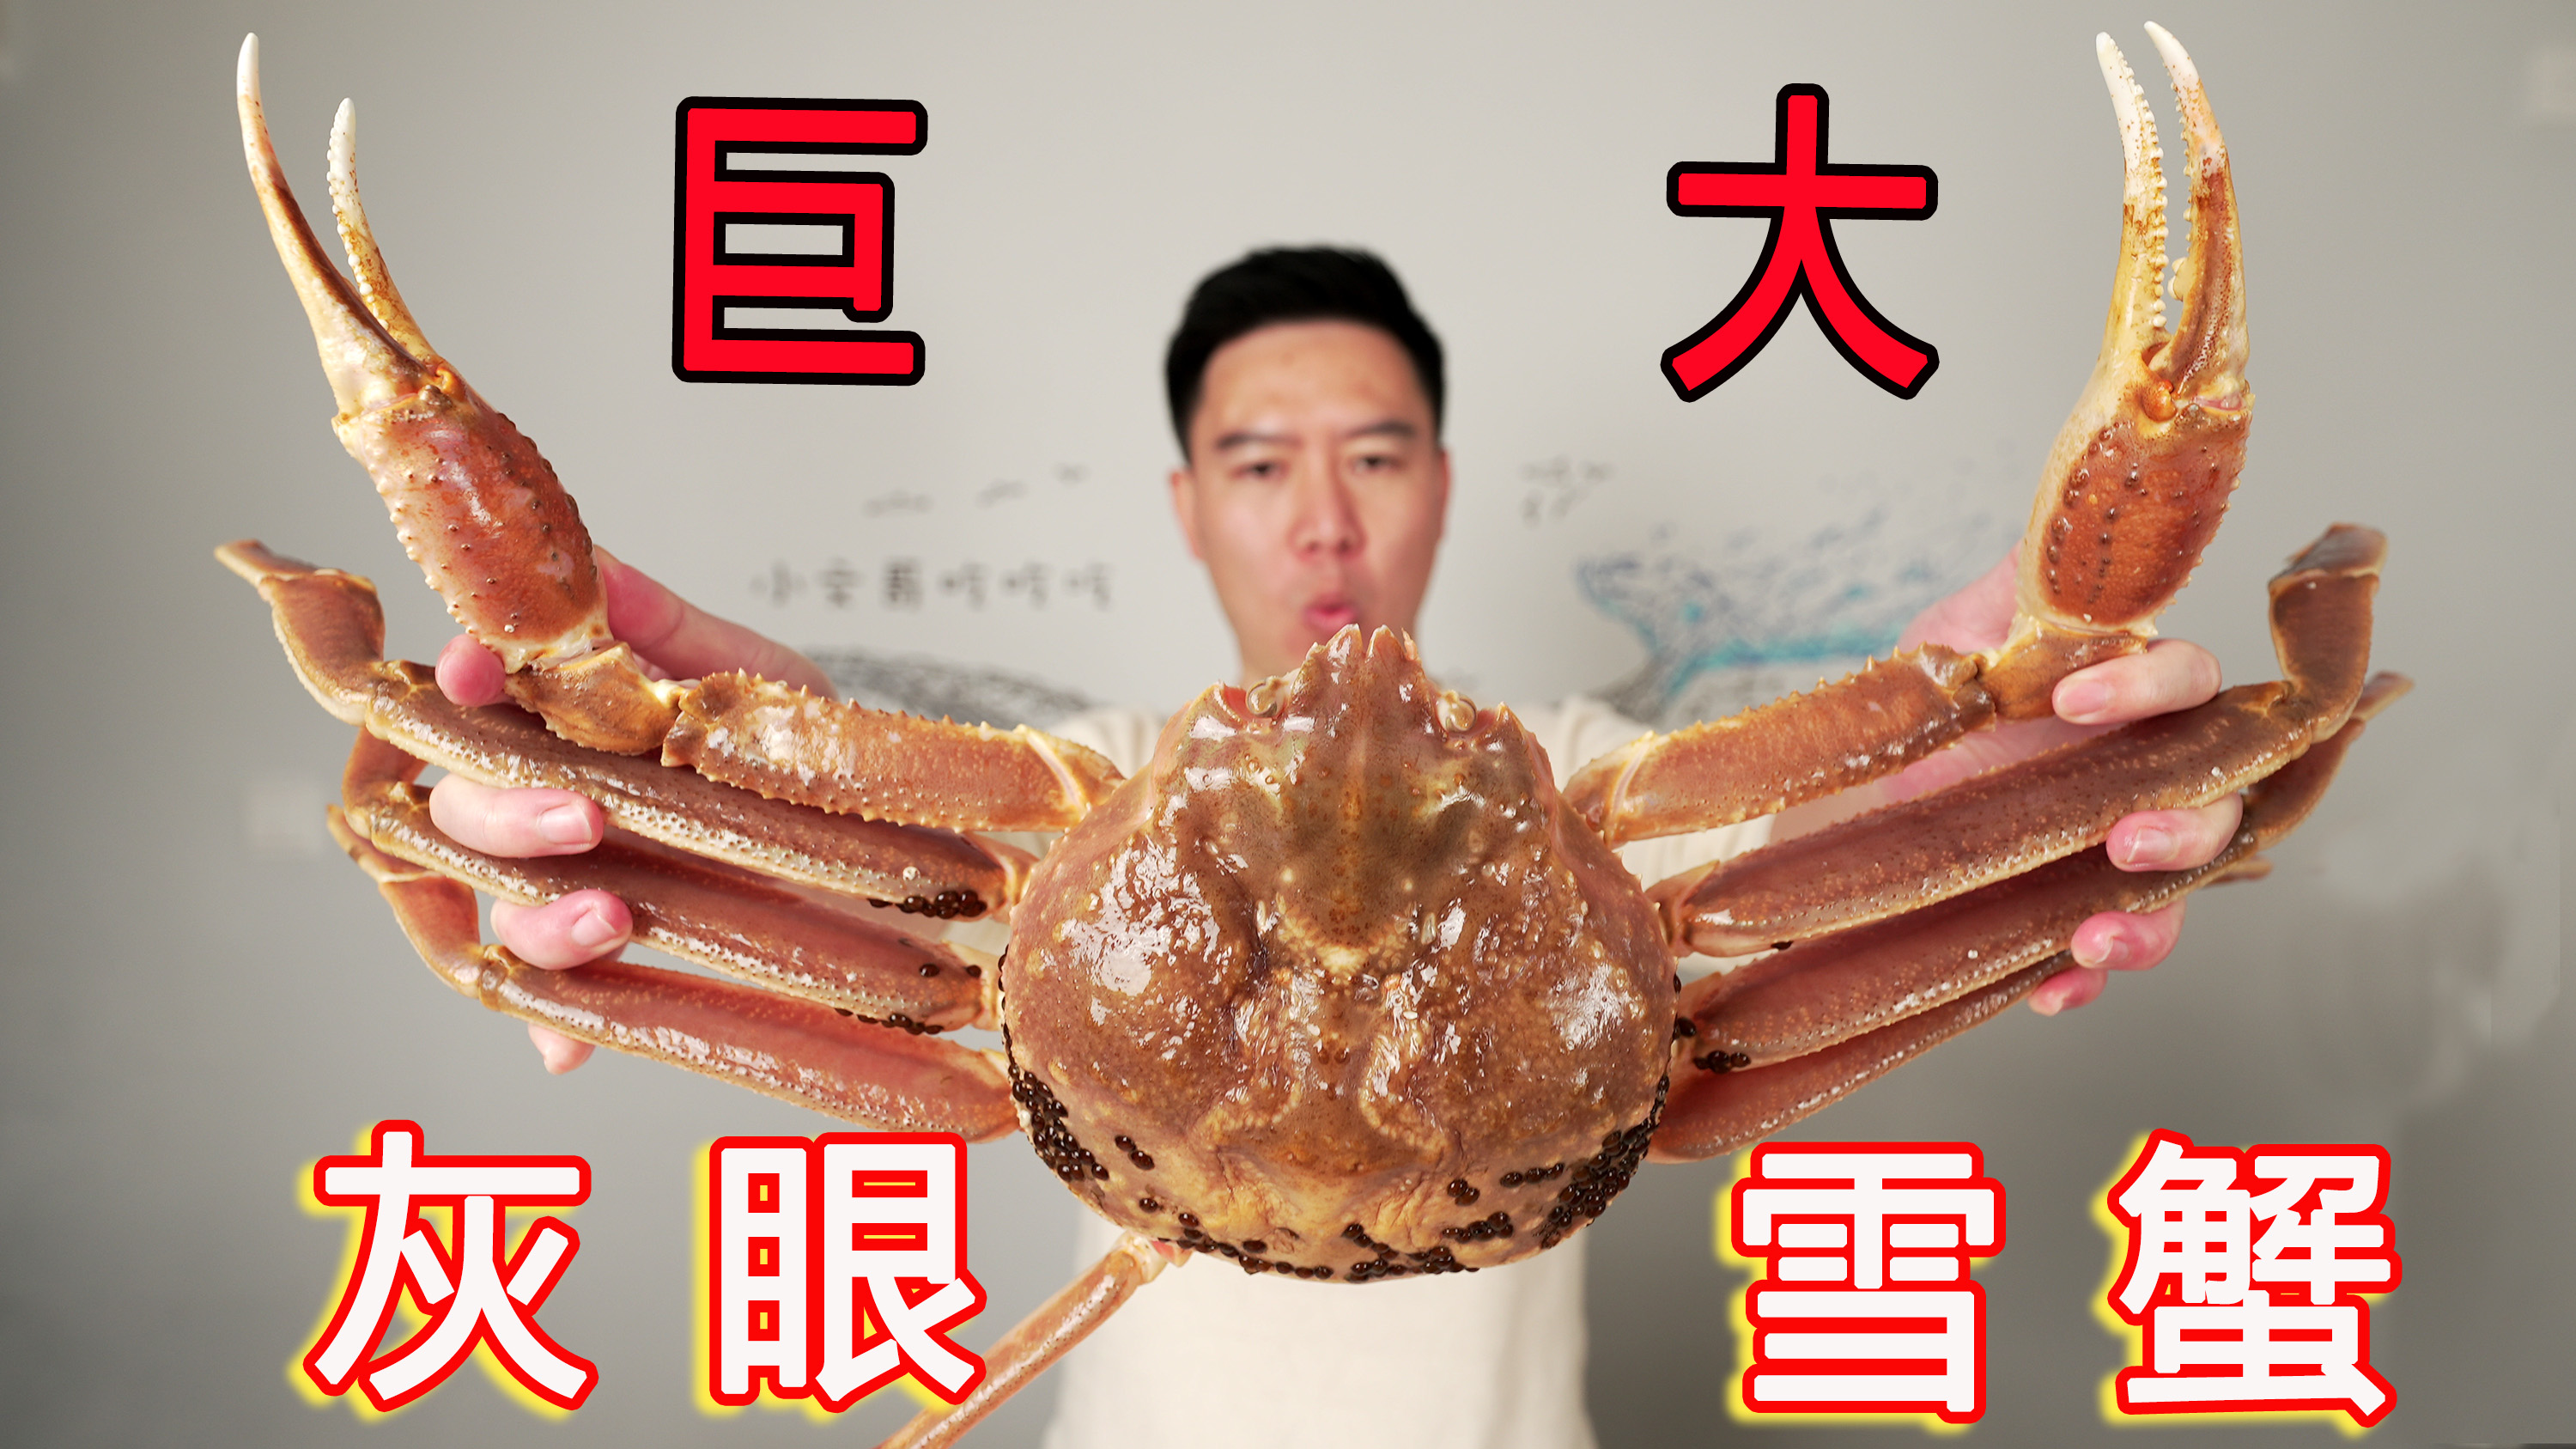 巨大松叶蟹，可遇不可求，刺身、煮粥连锅底都舔干净